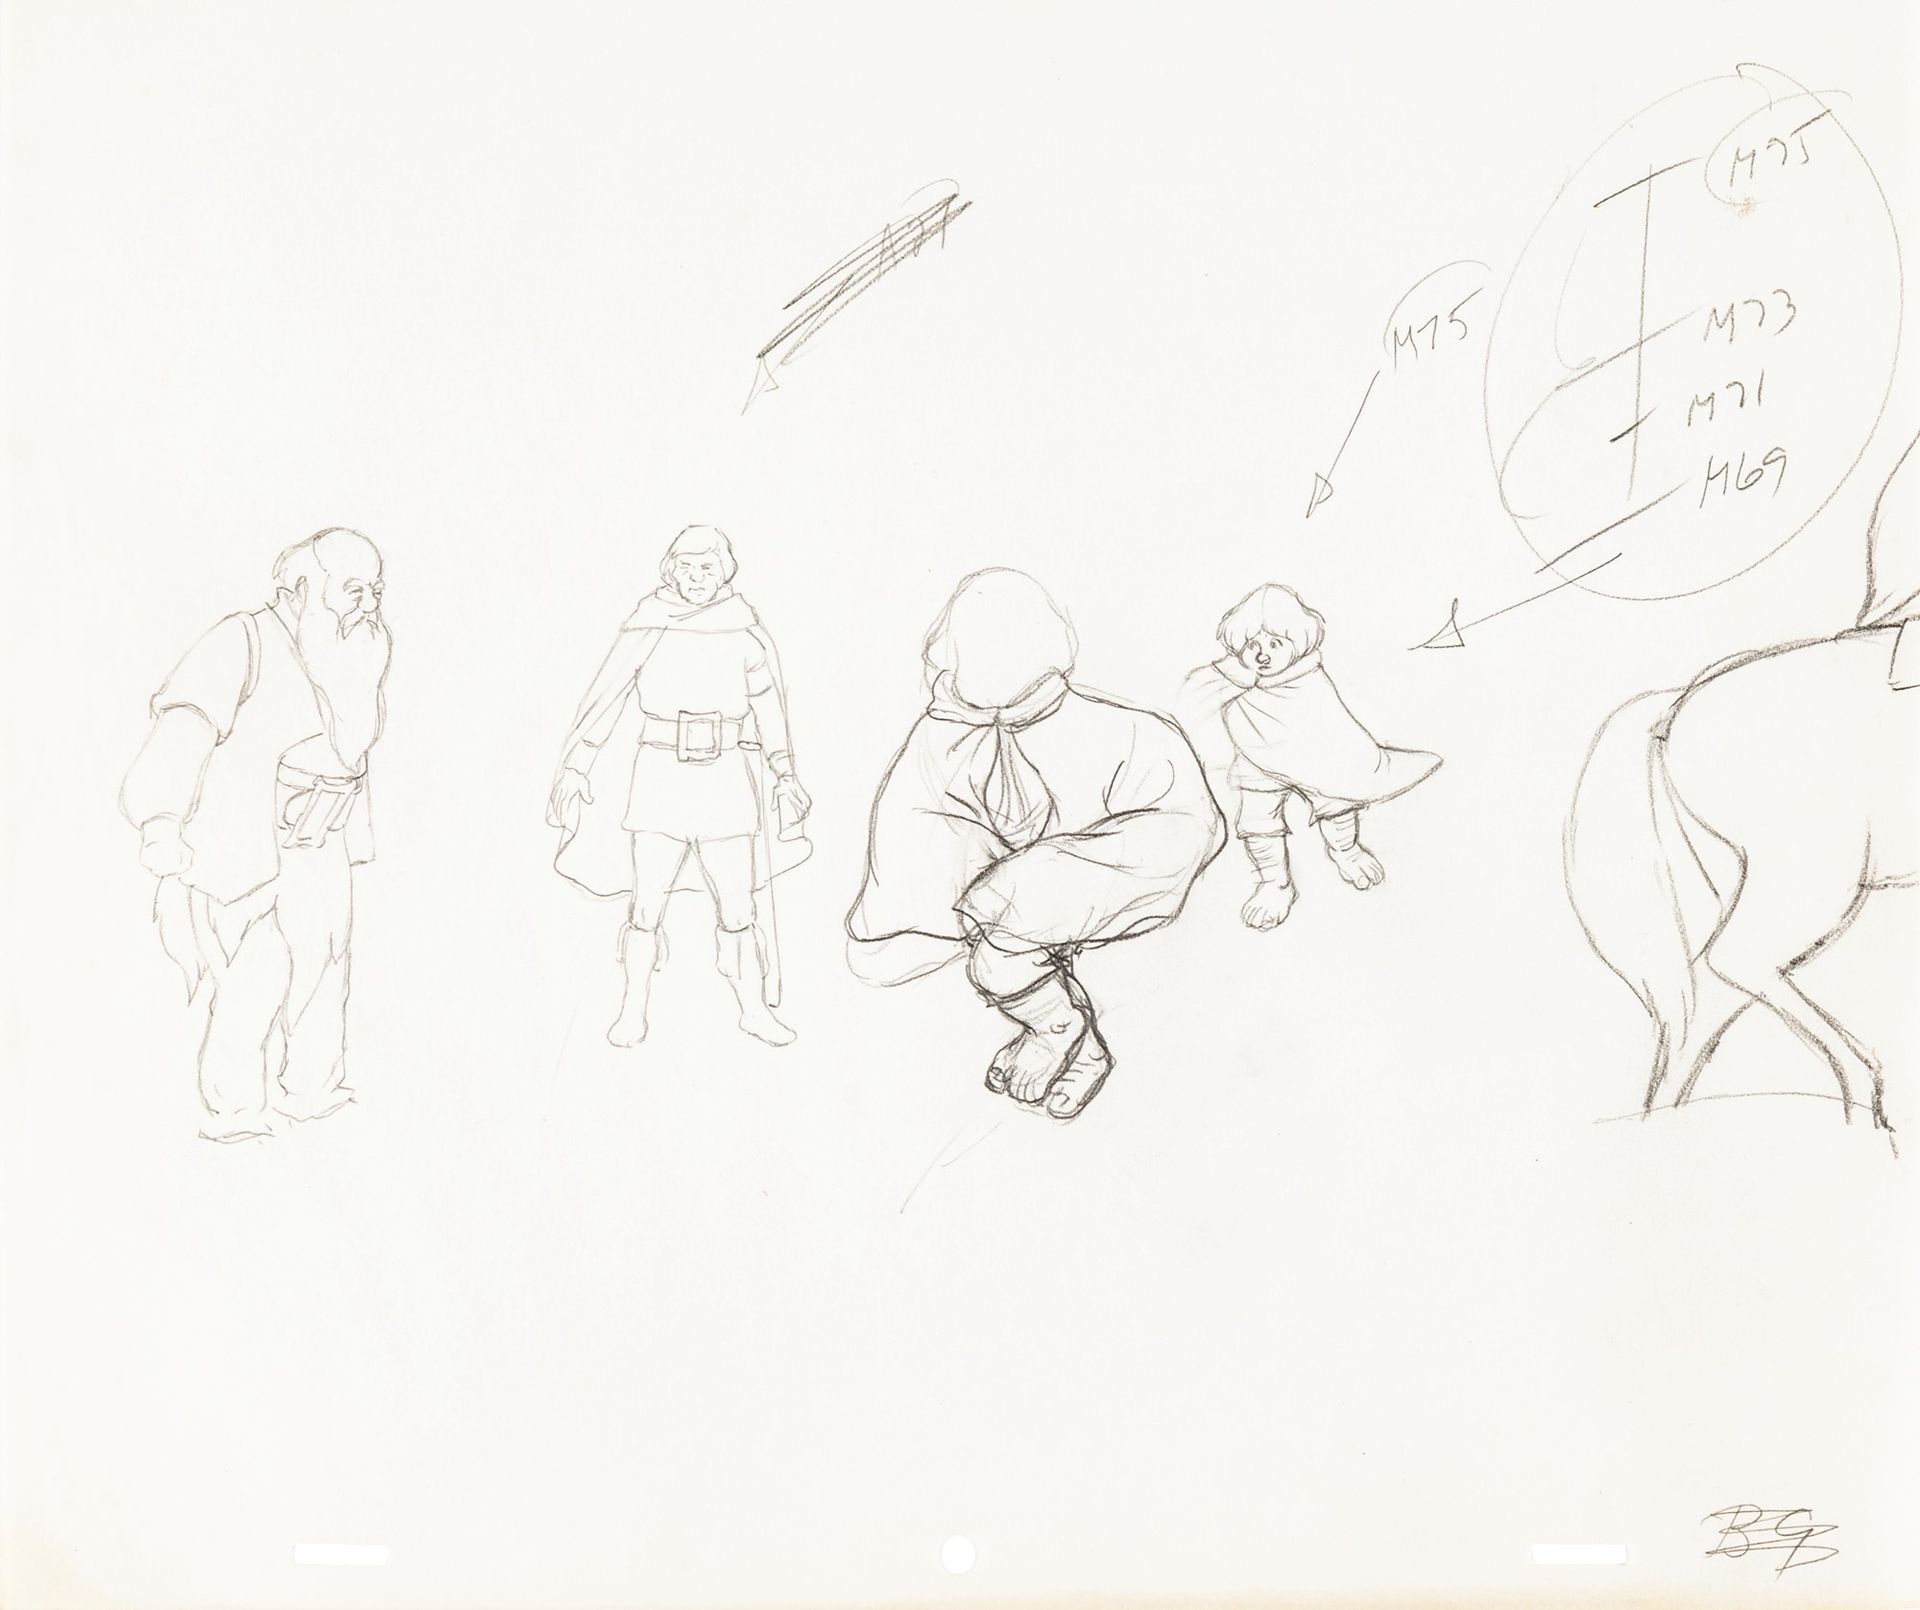 Studio Bakshi Der Herr der Ringe, 1978

Bleistift auf Papier
31,5 x 27 cm
Produk&hellip;